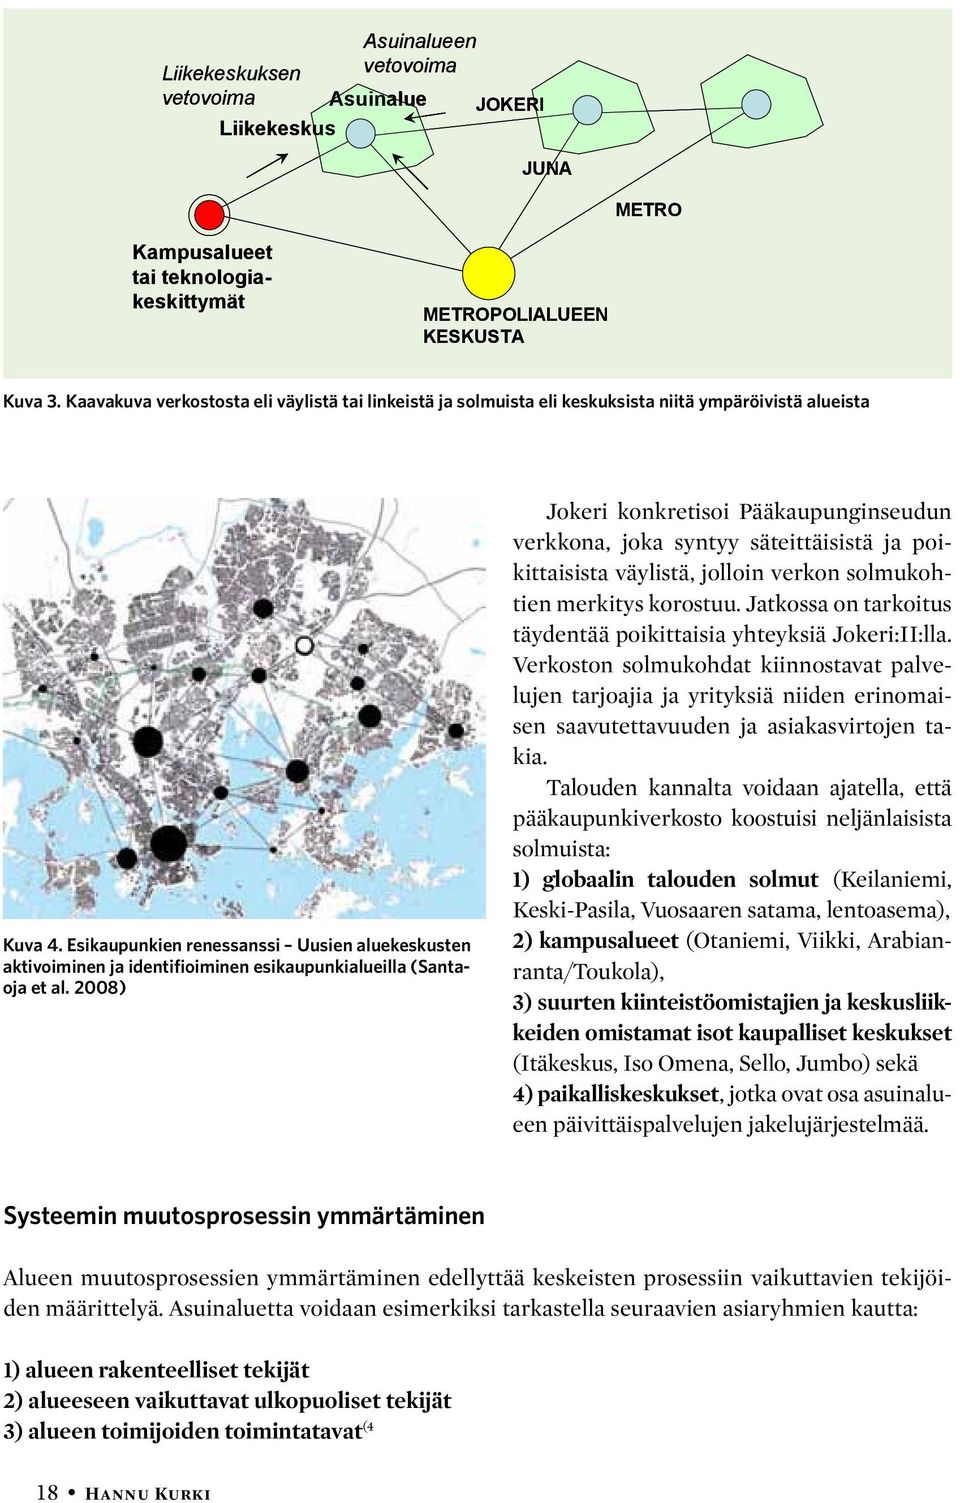 Esikaupunkien renessanssi Uusien aluekeskusten aktivoiminen ja identifioiminen esikaupunkialueilla (Santaoja et al.